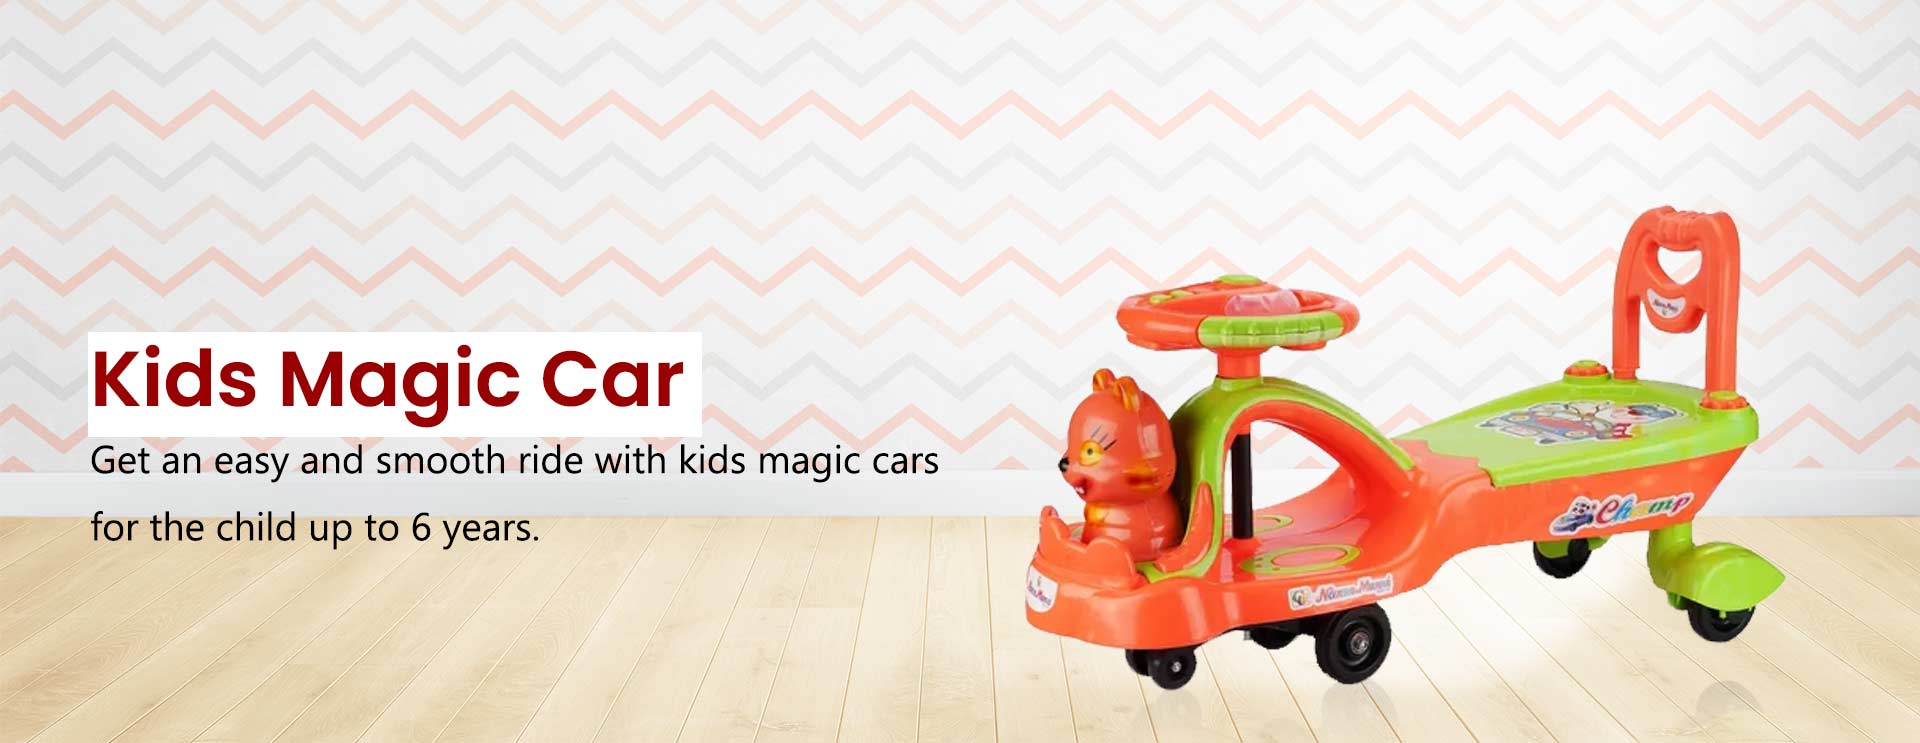 Kids Magic Car Manufacturers in Pune